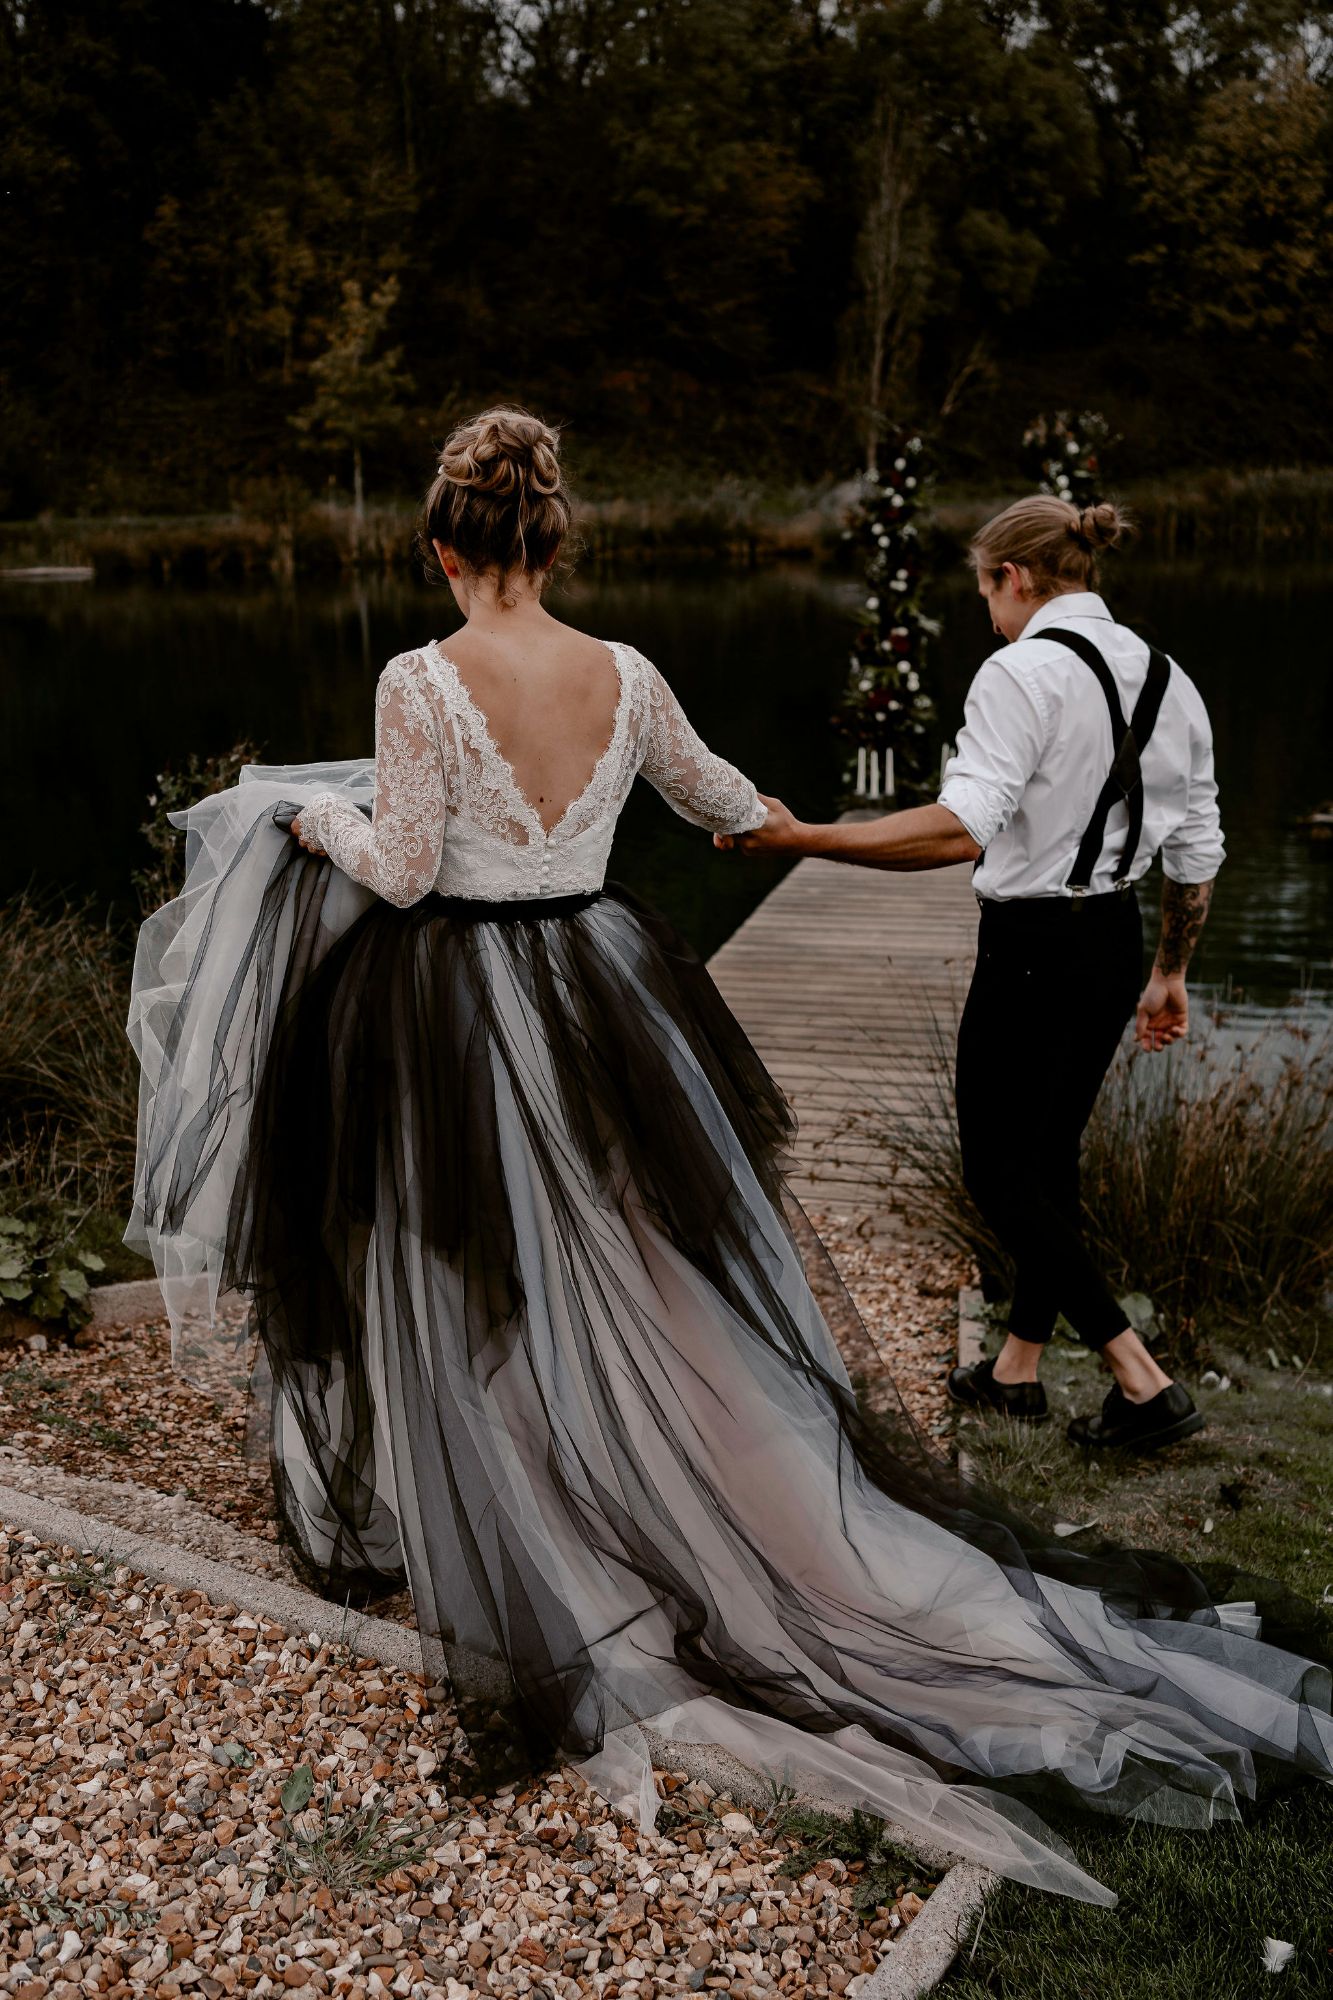 Black tulle alternative wedding dress skirt